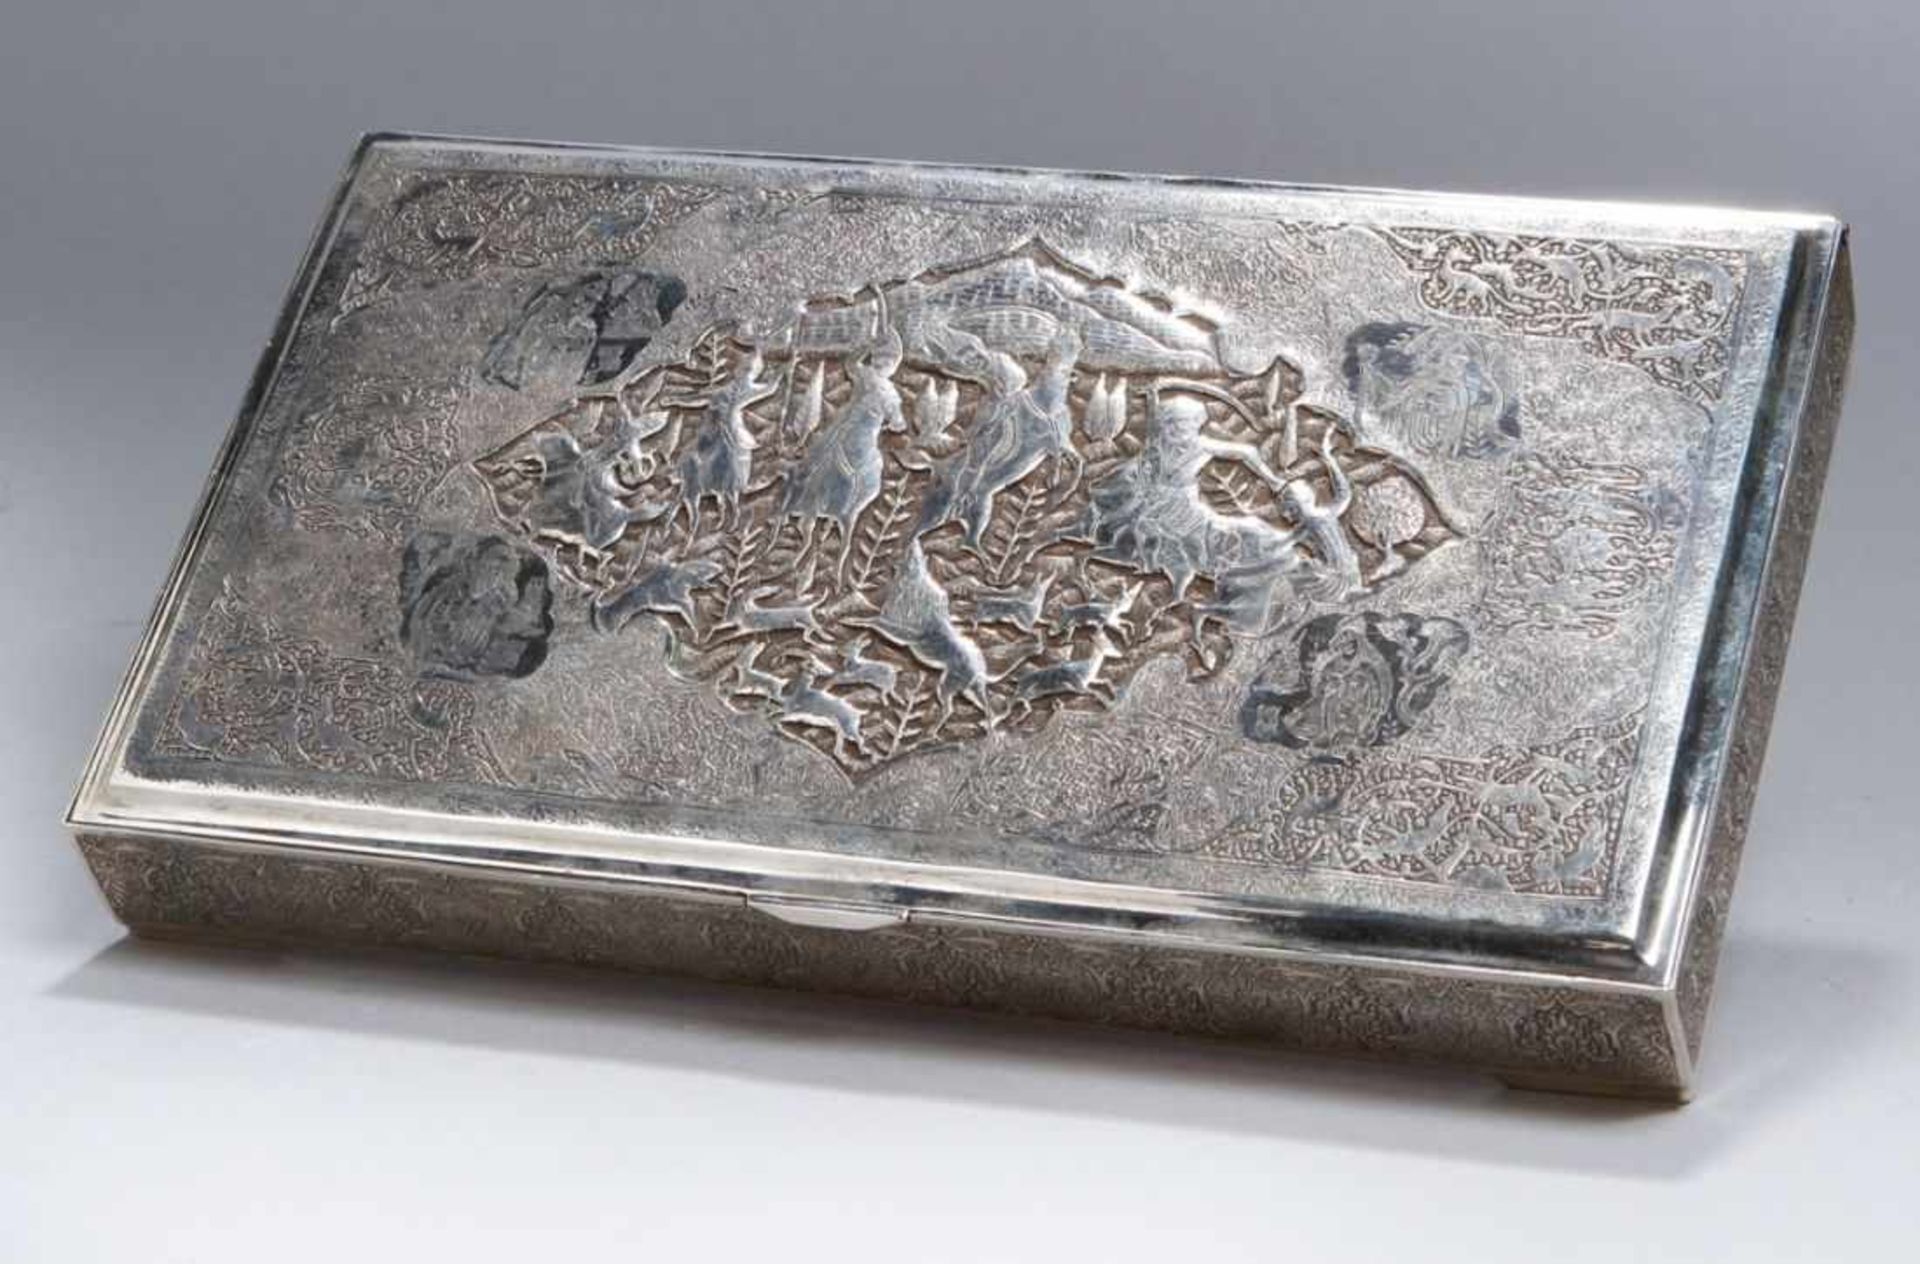 Koran-Schatulle, Persien, um 1900, Silber 84, über 4 flachen Eckfüßchen rechteckige,zylindrische